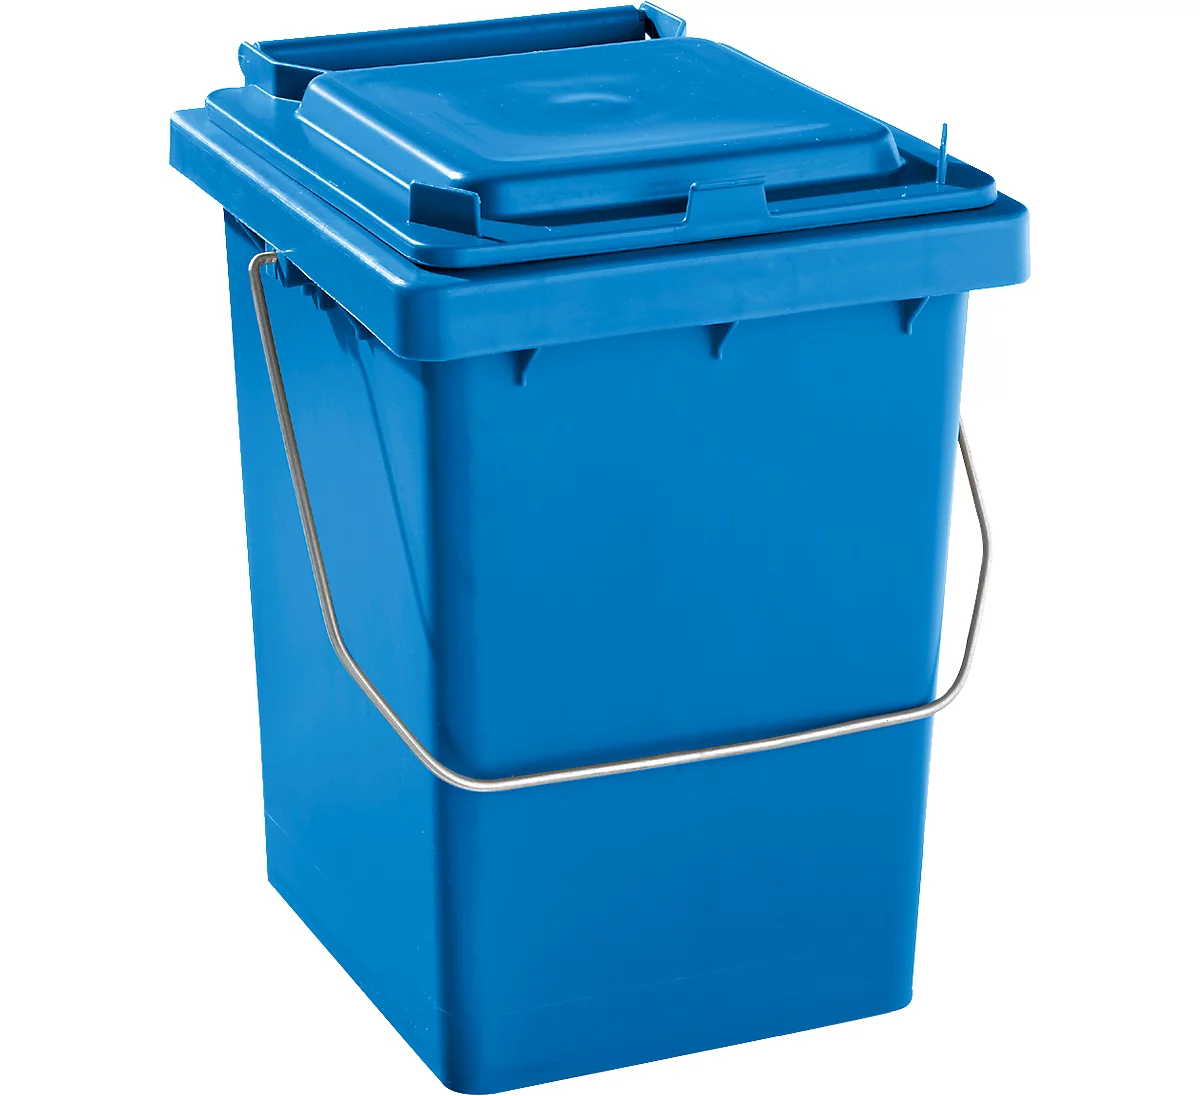 Voorsorteeremmer Mülli, B 175 x D 195 x H 300 mm, 10 liter, blauw